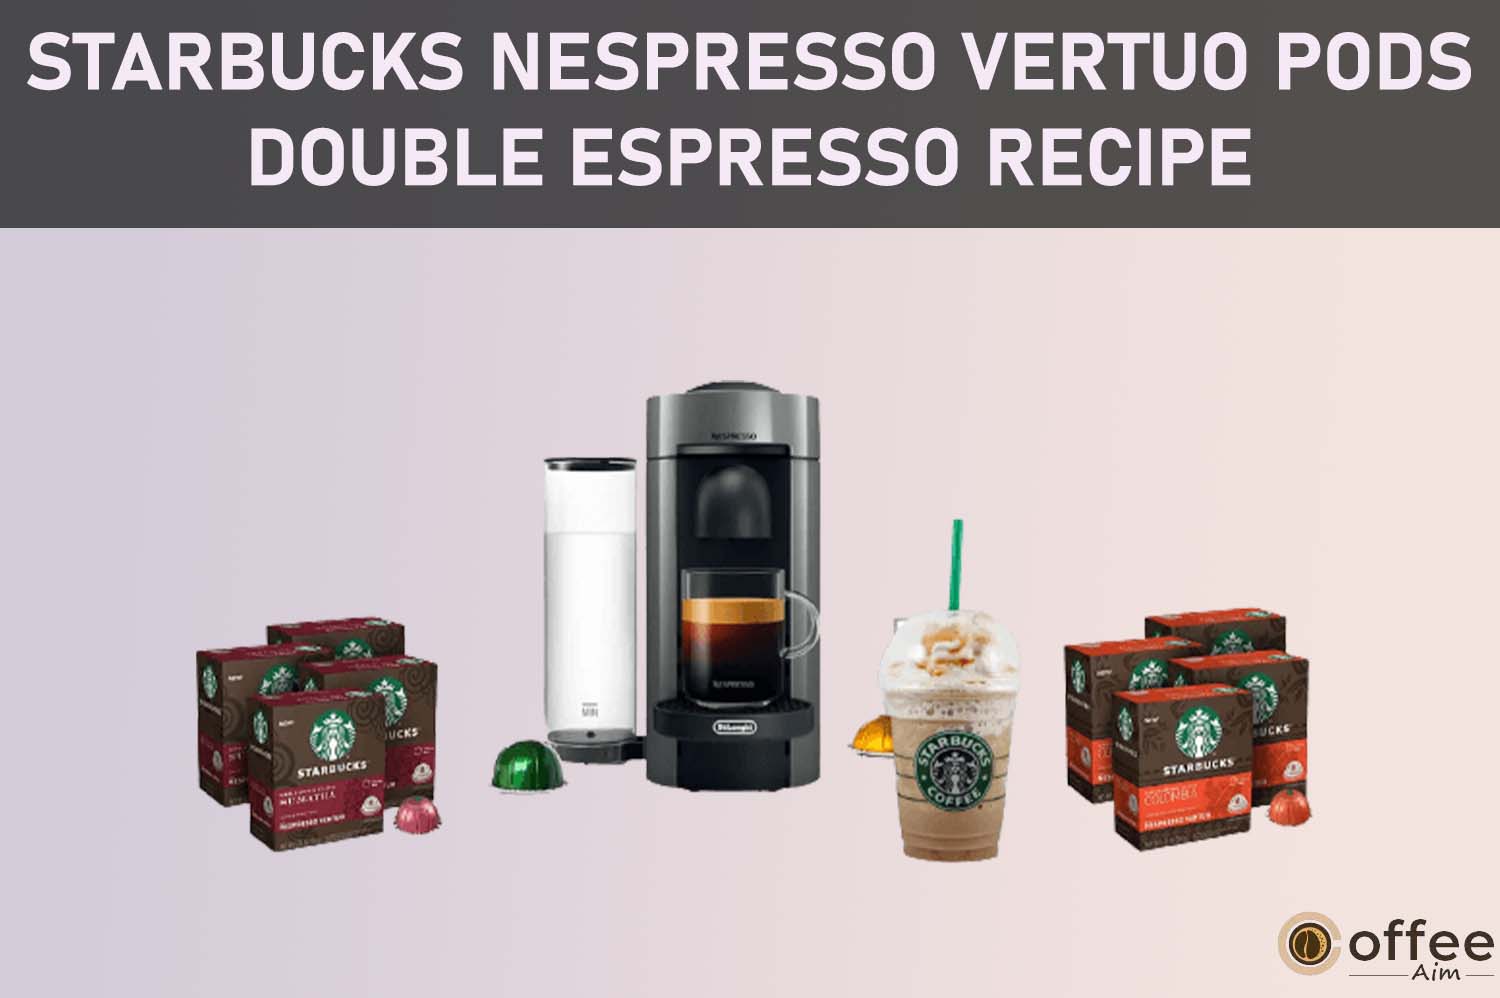 Featured image for the article "Starbucks Nespresso Vertuo pods Double Espresso Recipe"